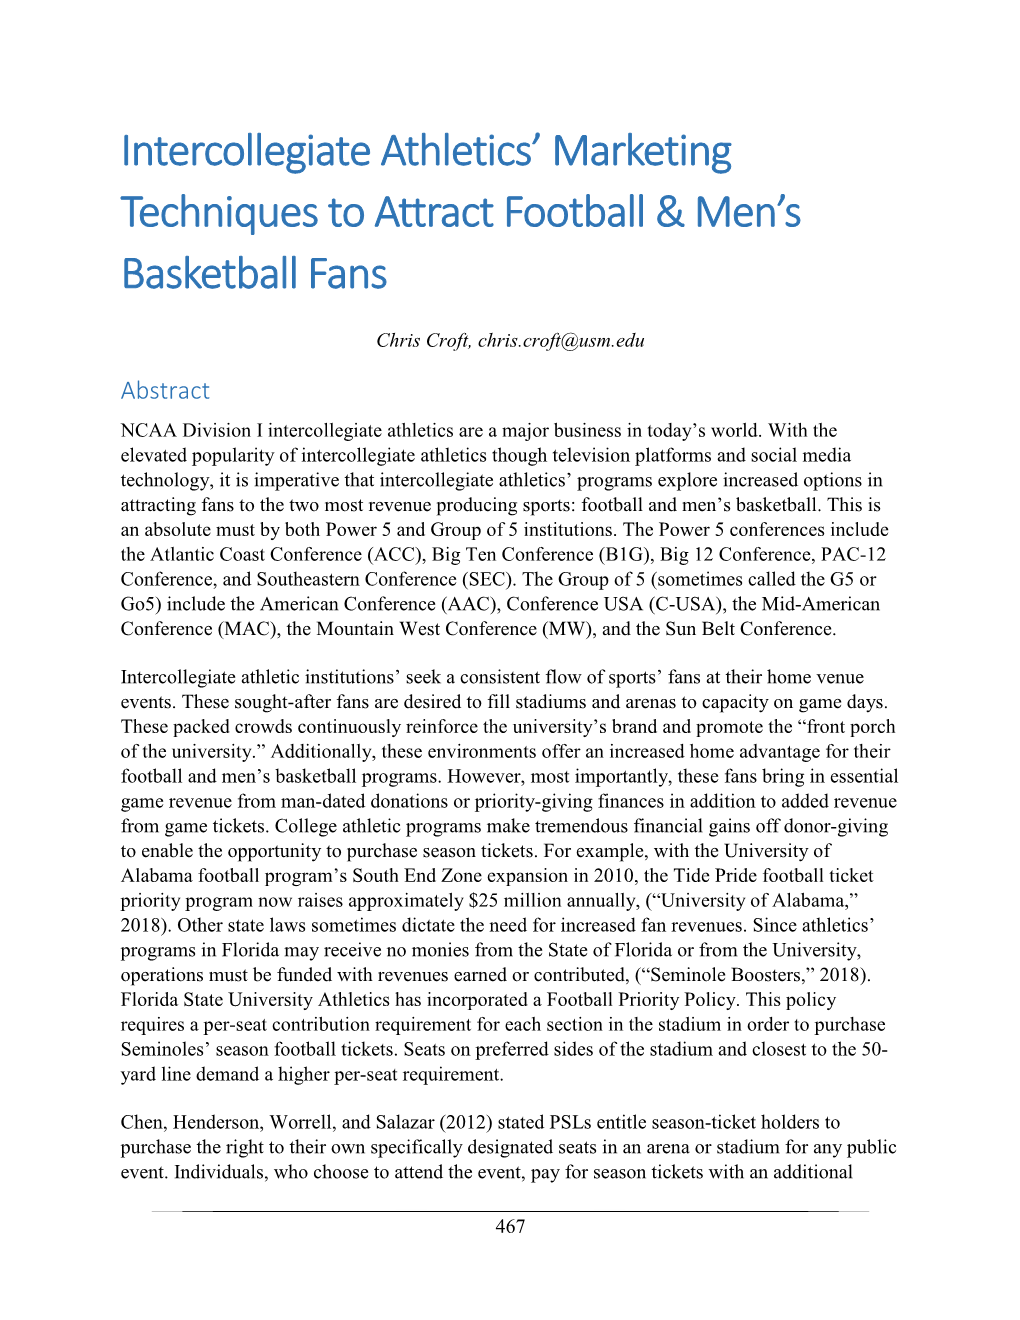 Intercollegiate Athletics' Marketing Techniques to Attract Football